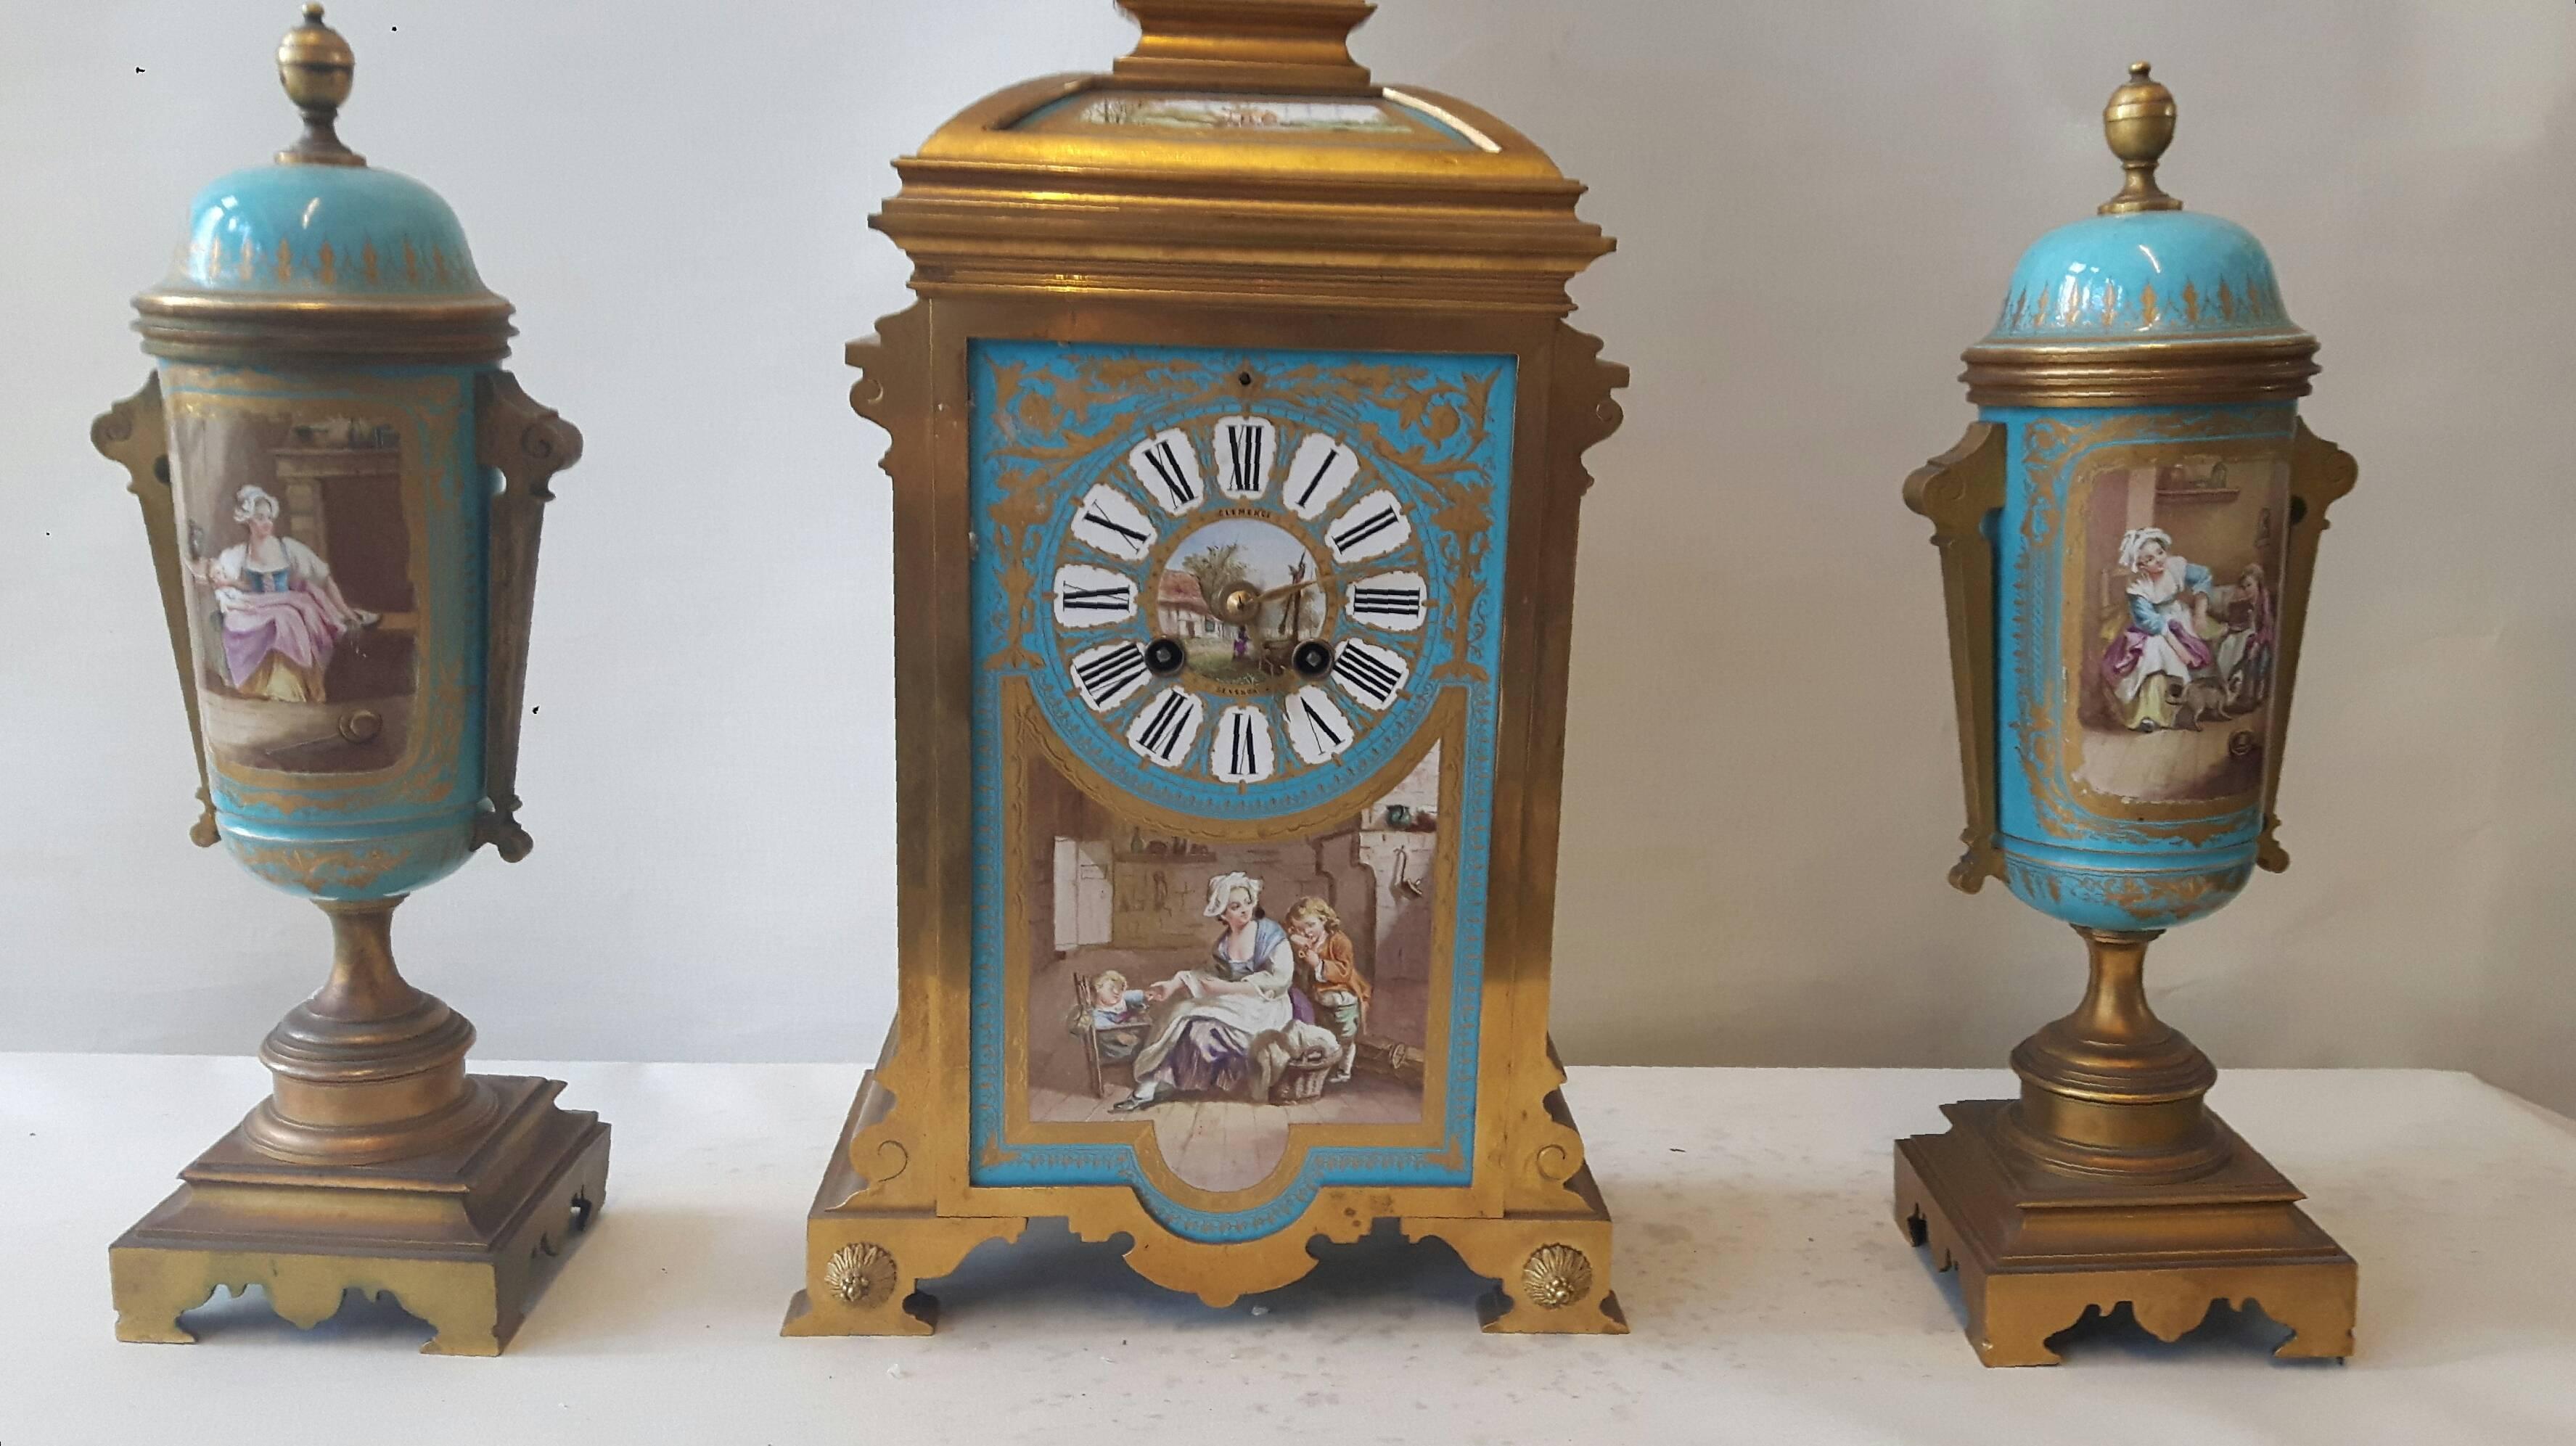 Eine schöne türkisfarbene Uhrengarnitur im Sèvres-Stil, handbemalt auf Sèvres-Porzellanrohlingen aus dem 18. Jahrhundert, aber dekoriert im 19. Jahrhundert, wahrscheinlich in der Werkstatt von Émile Lévy in Paris. 
Die Kartuschen sind nach Gemälden